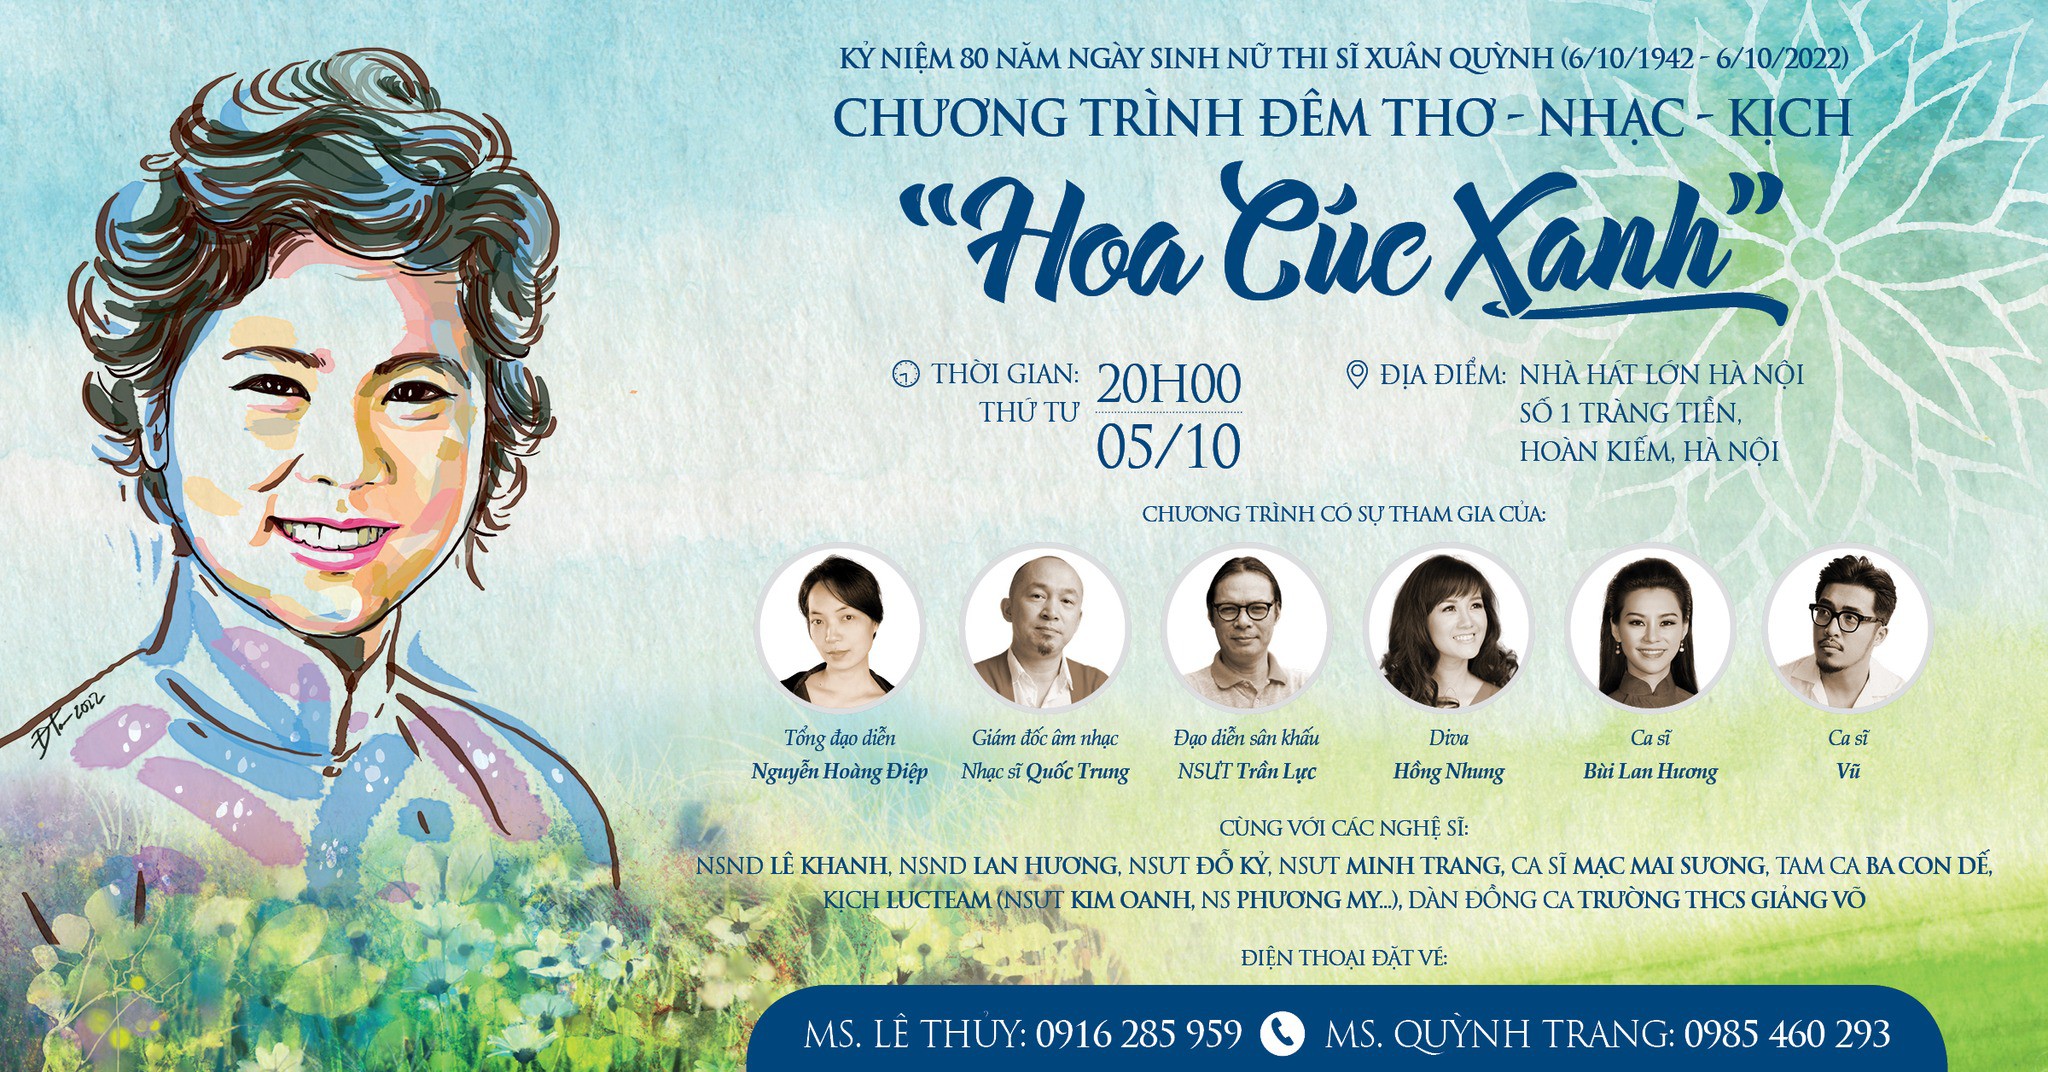 Đêm thơ - nhạc - kịch HOA CÚC XANH sẽ có sự xuất hiện của diva Hồng Nhung và nữ ca sĩ Bùi Lan Hương 